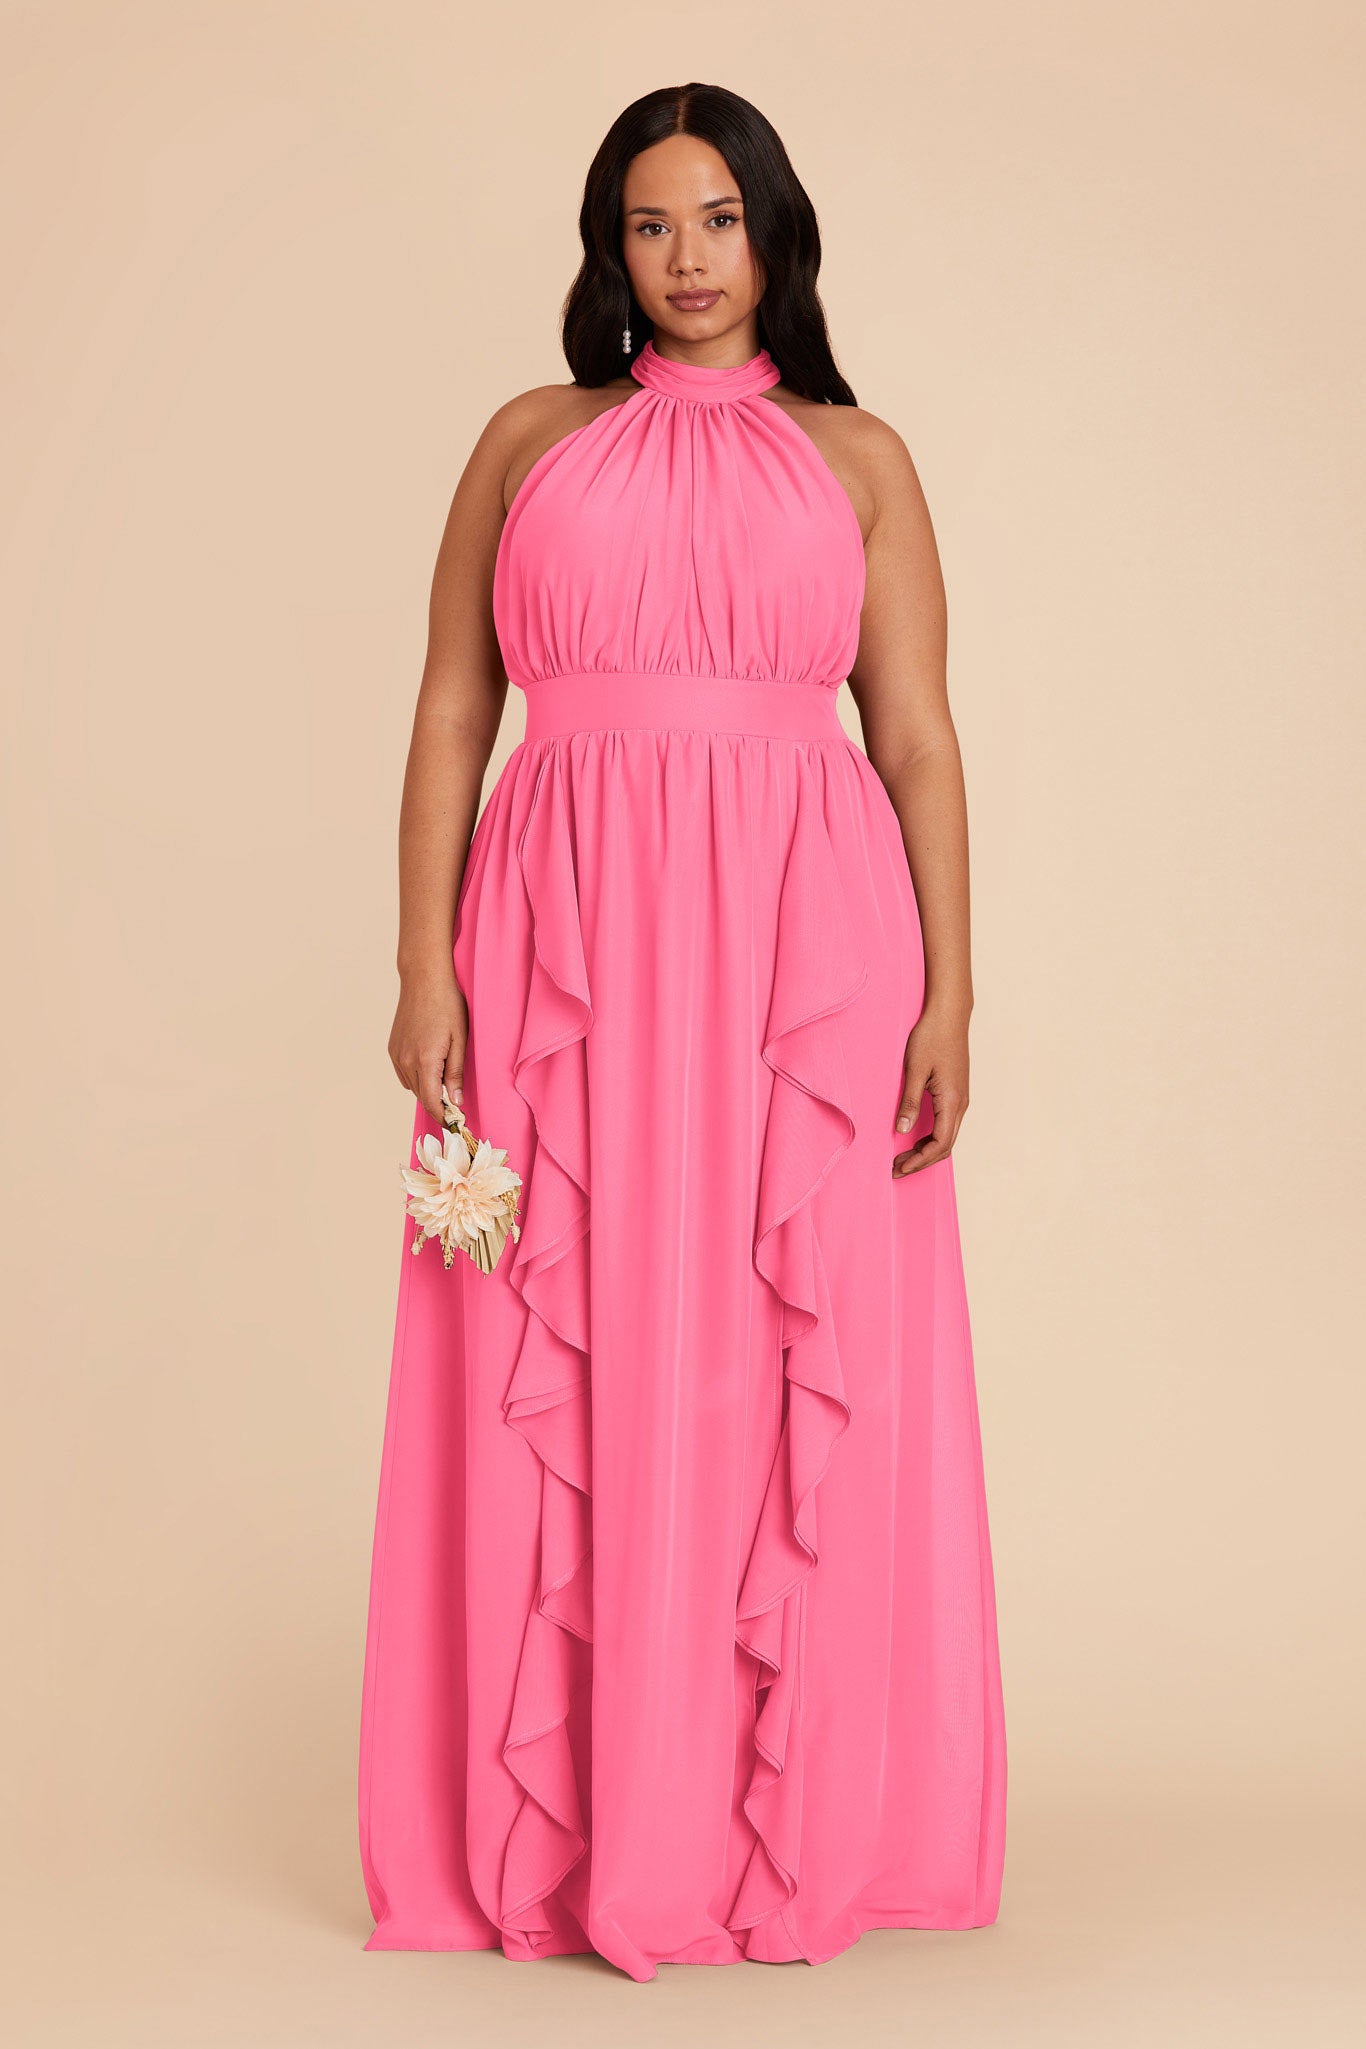 Bon Bon Pink Joyce Chiffon Dress by Birdy Grey